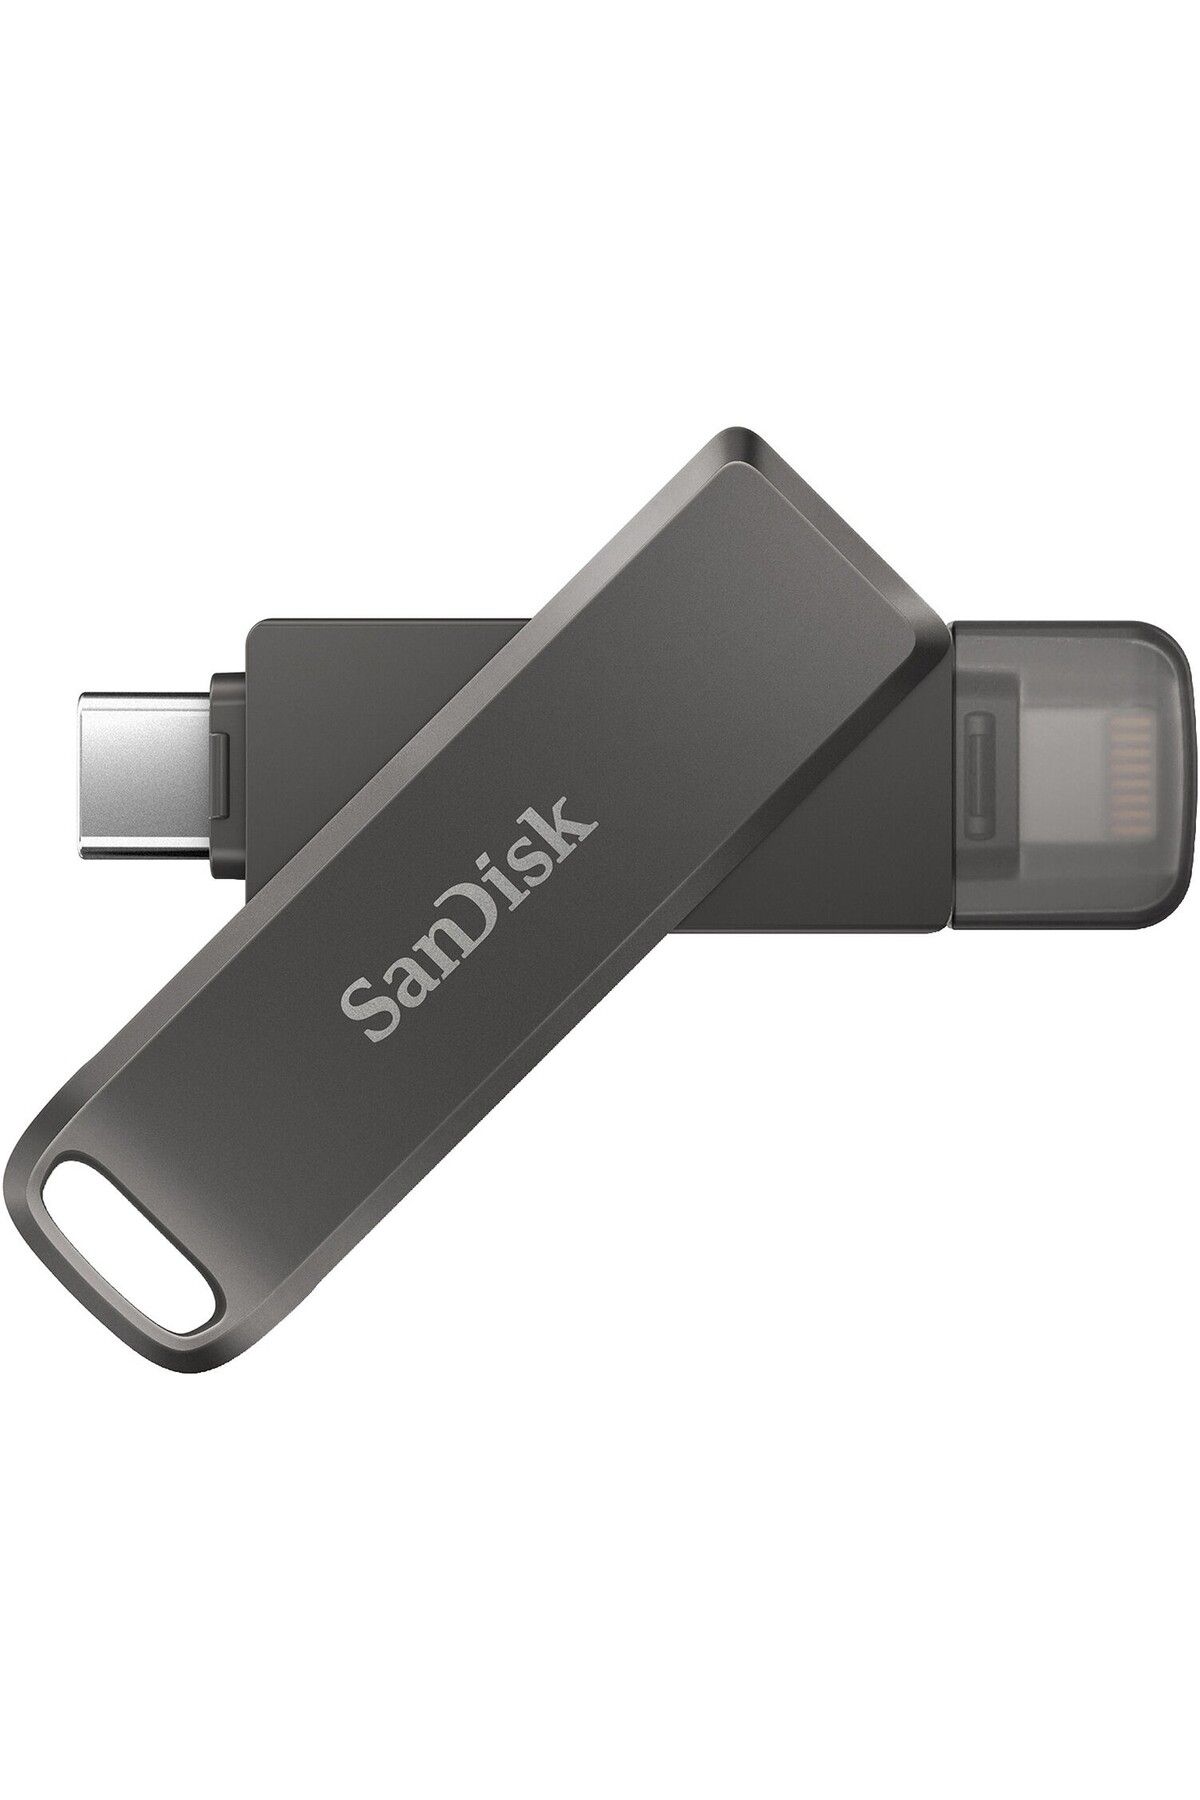 Sandisk IPHONE VE USB-C CİHAZLARI İÇİN SANDISK USB 128GB